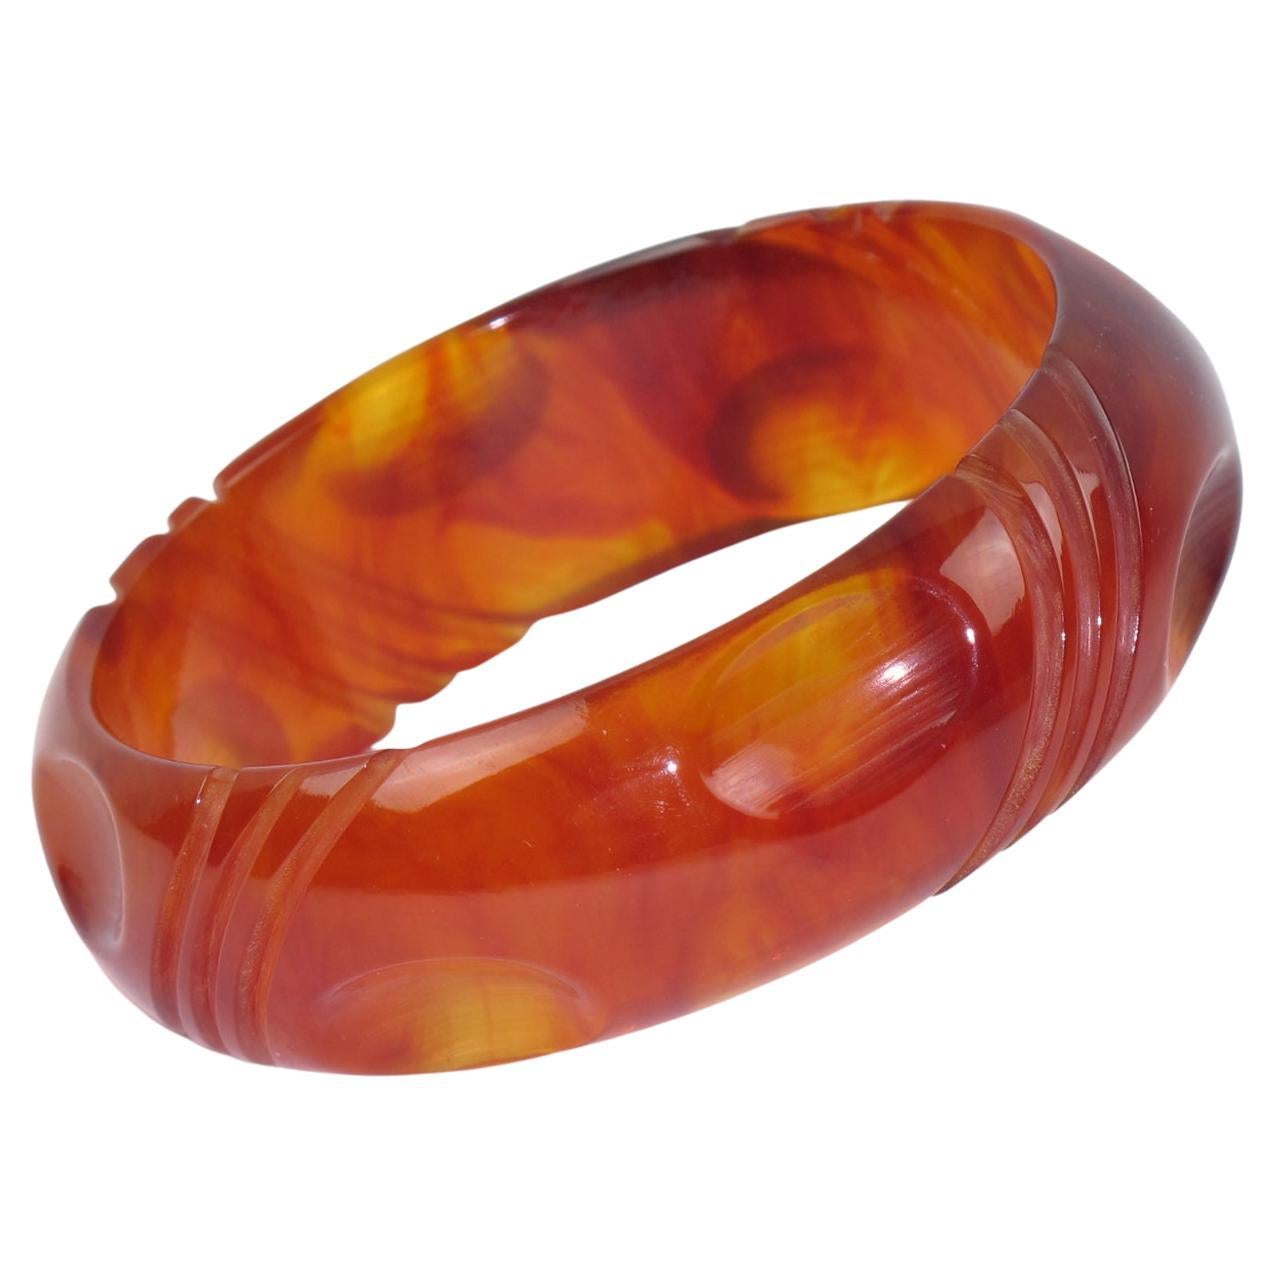 Bakelite Carved Bracelet Bangle in Red Tea Amber Marble Color For Sale